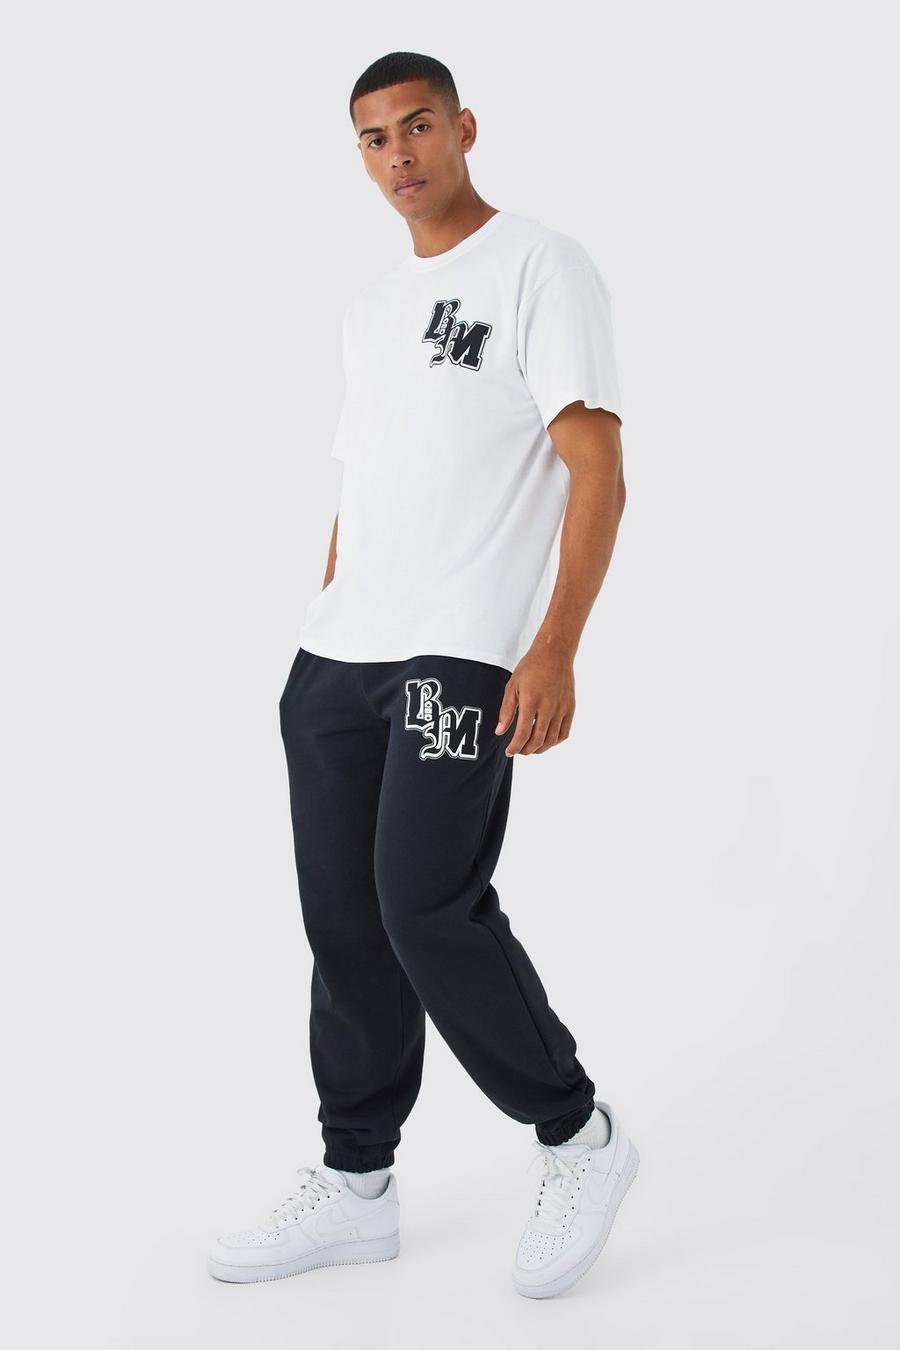 Oversize T-Shirt & Jogginghose mit Bm Print, Black noir